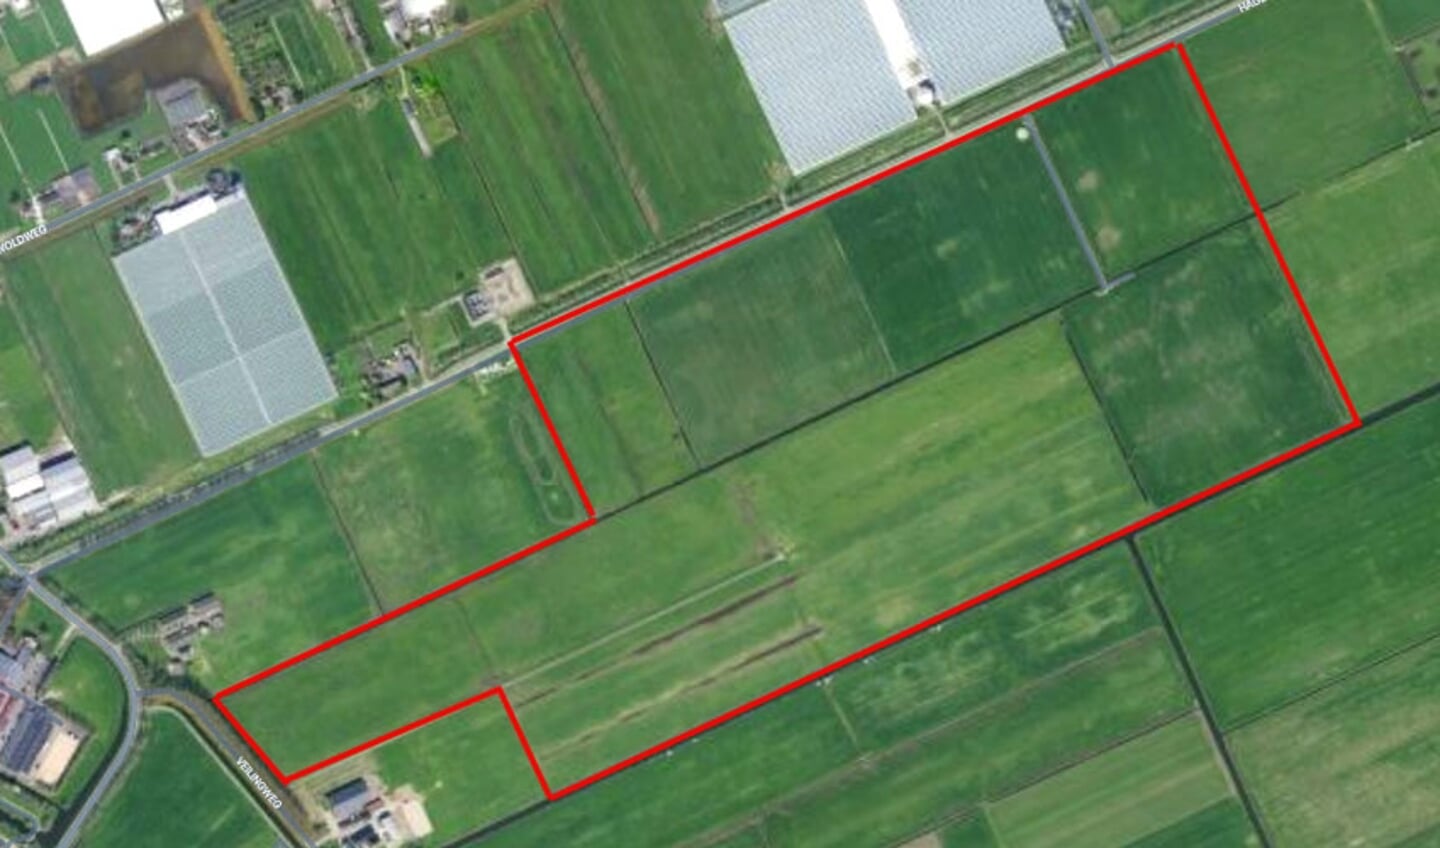 Satellietfoto van de beoogde locatie voor het zonnepark in IJsselmuiden